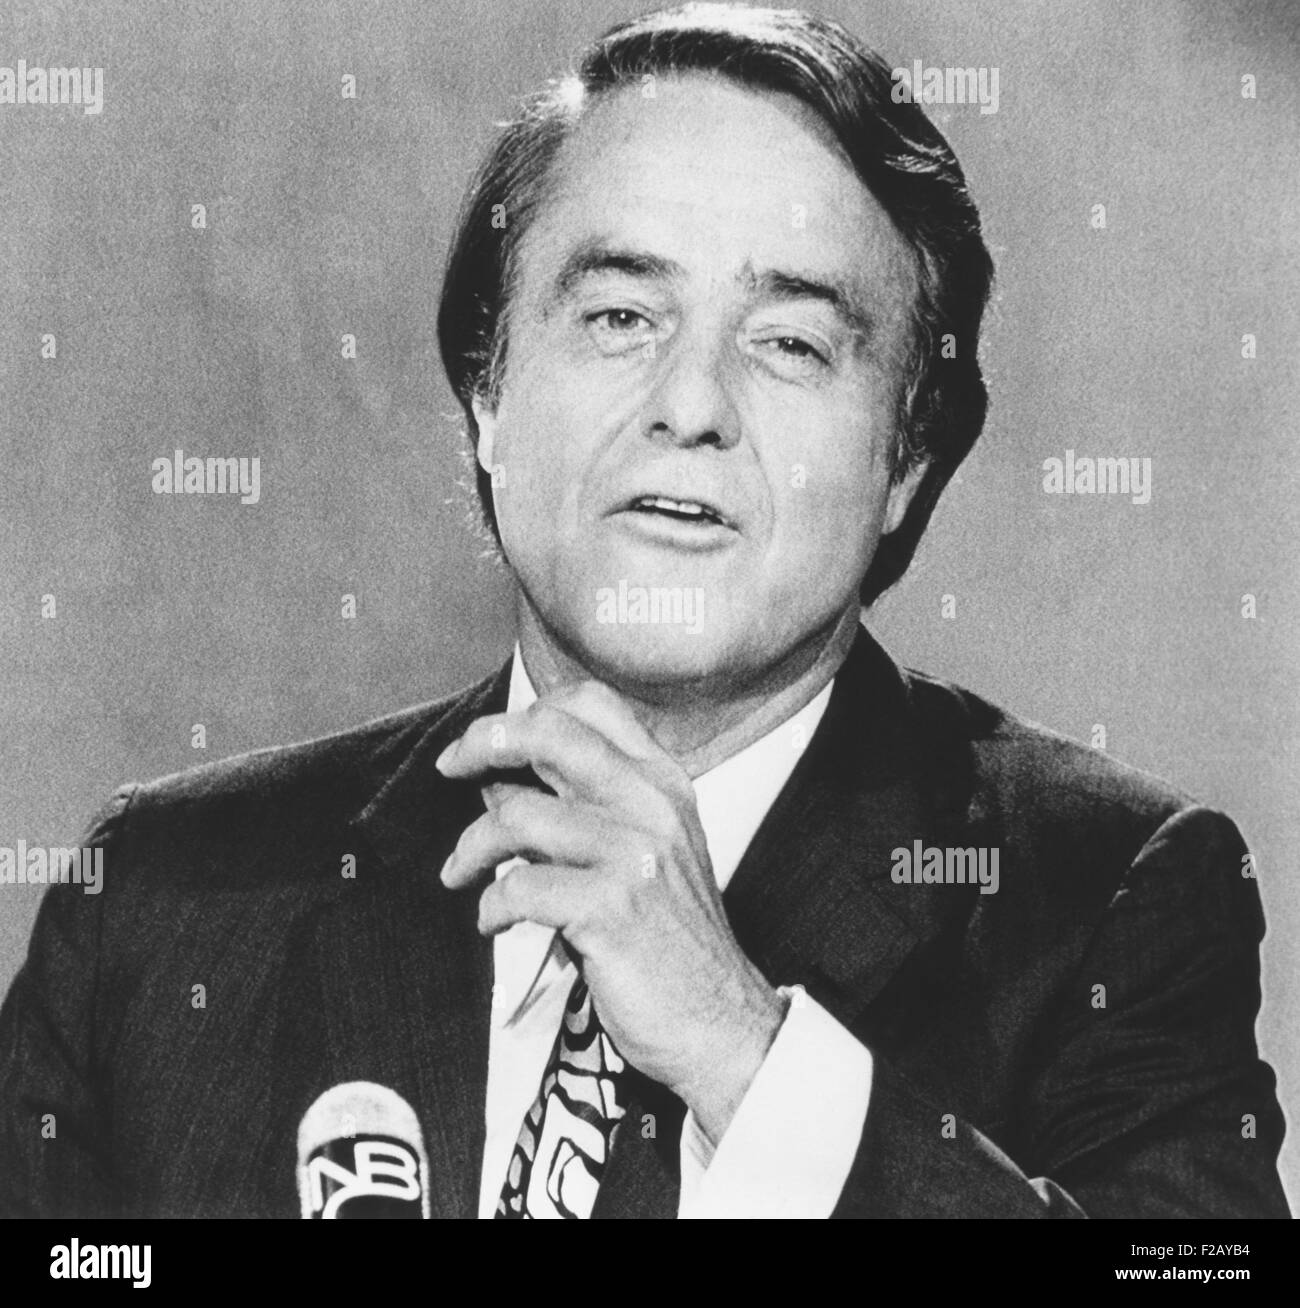 Sargent Shriver, demokratischen Vize-Präsidentenkandidat von 1972 auf MEET THE PRESS erscheinen. 13. August 1972. Er kritisierte Präsident Stockfoto